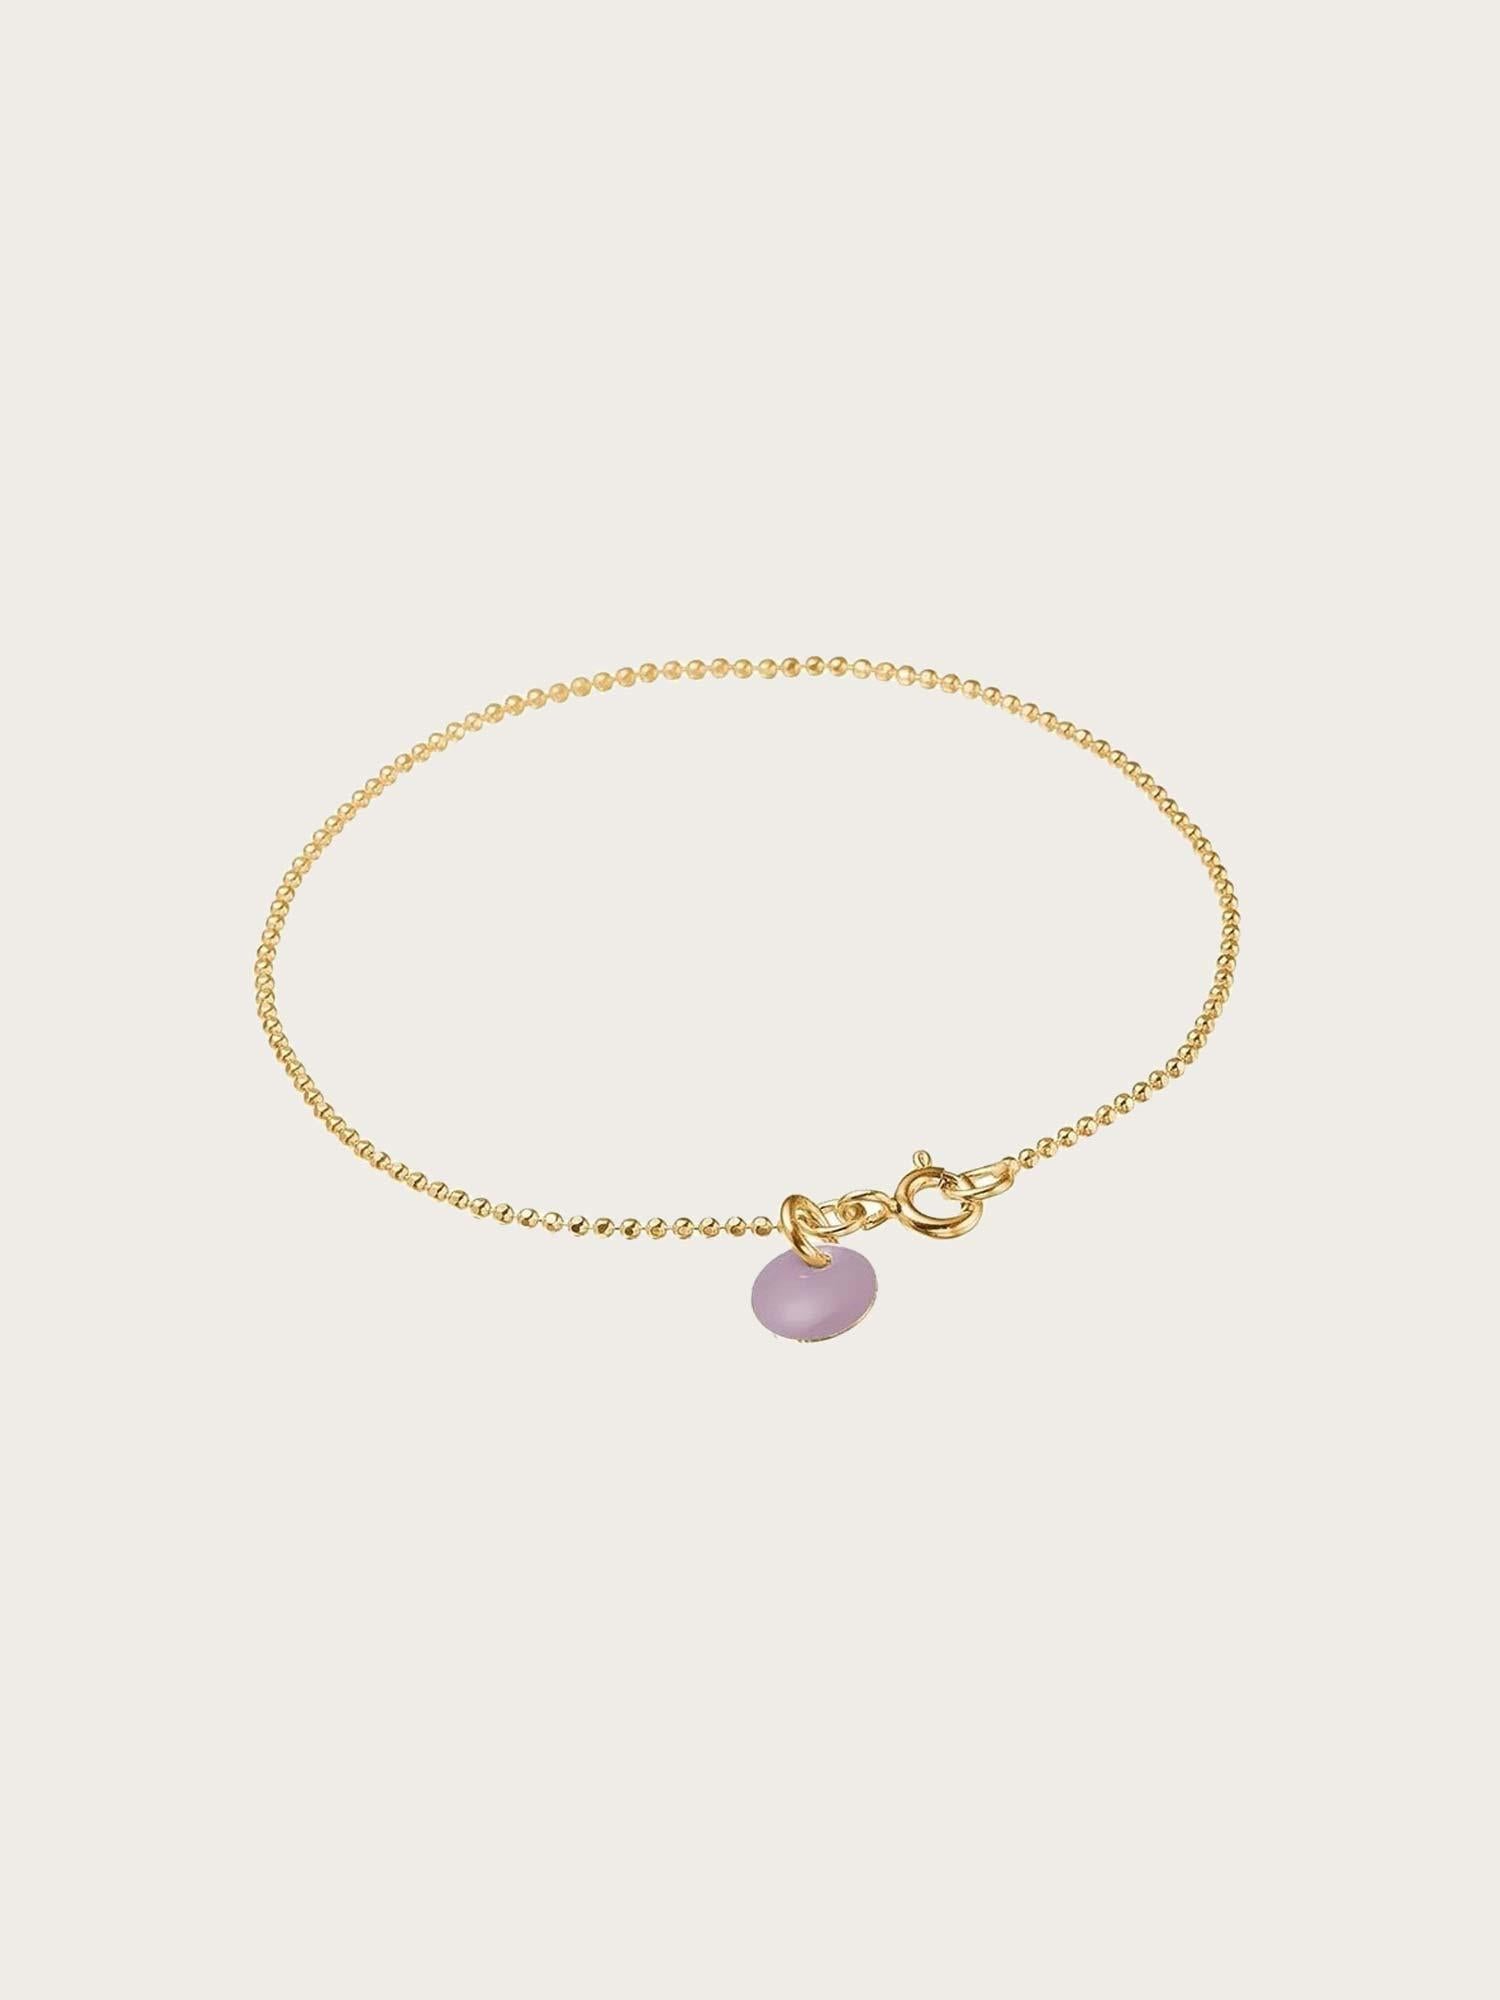 Bracelet Ball Chain Lavender